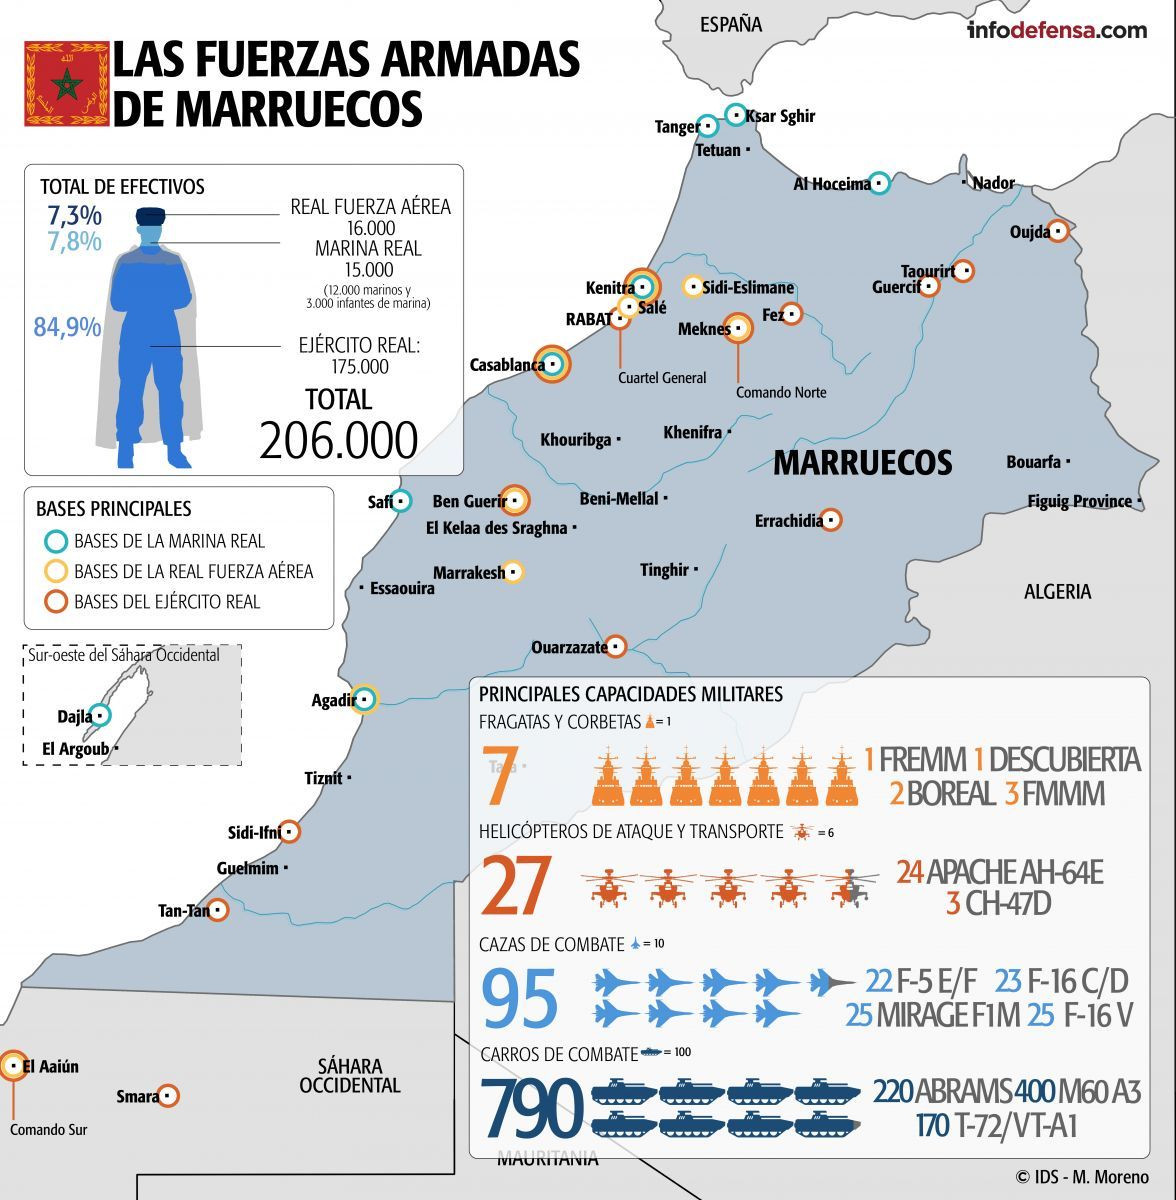 InfografiCC81a FFAA Marruecos203